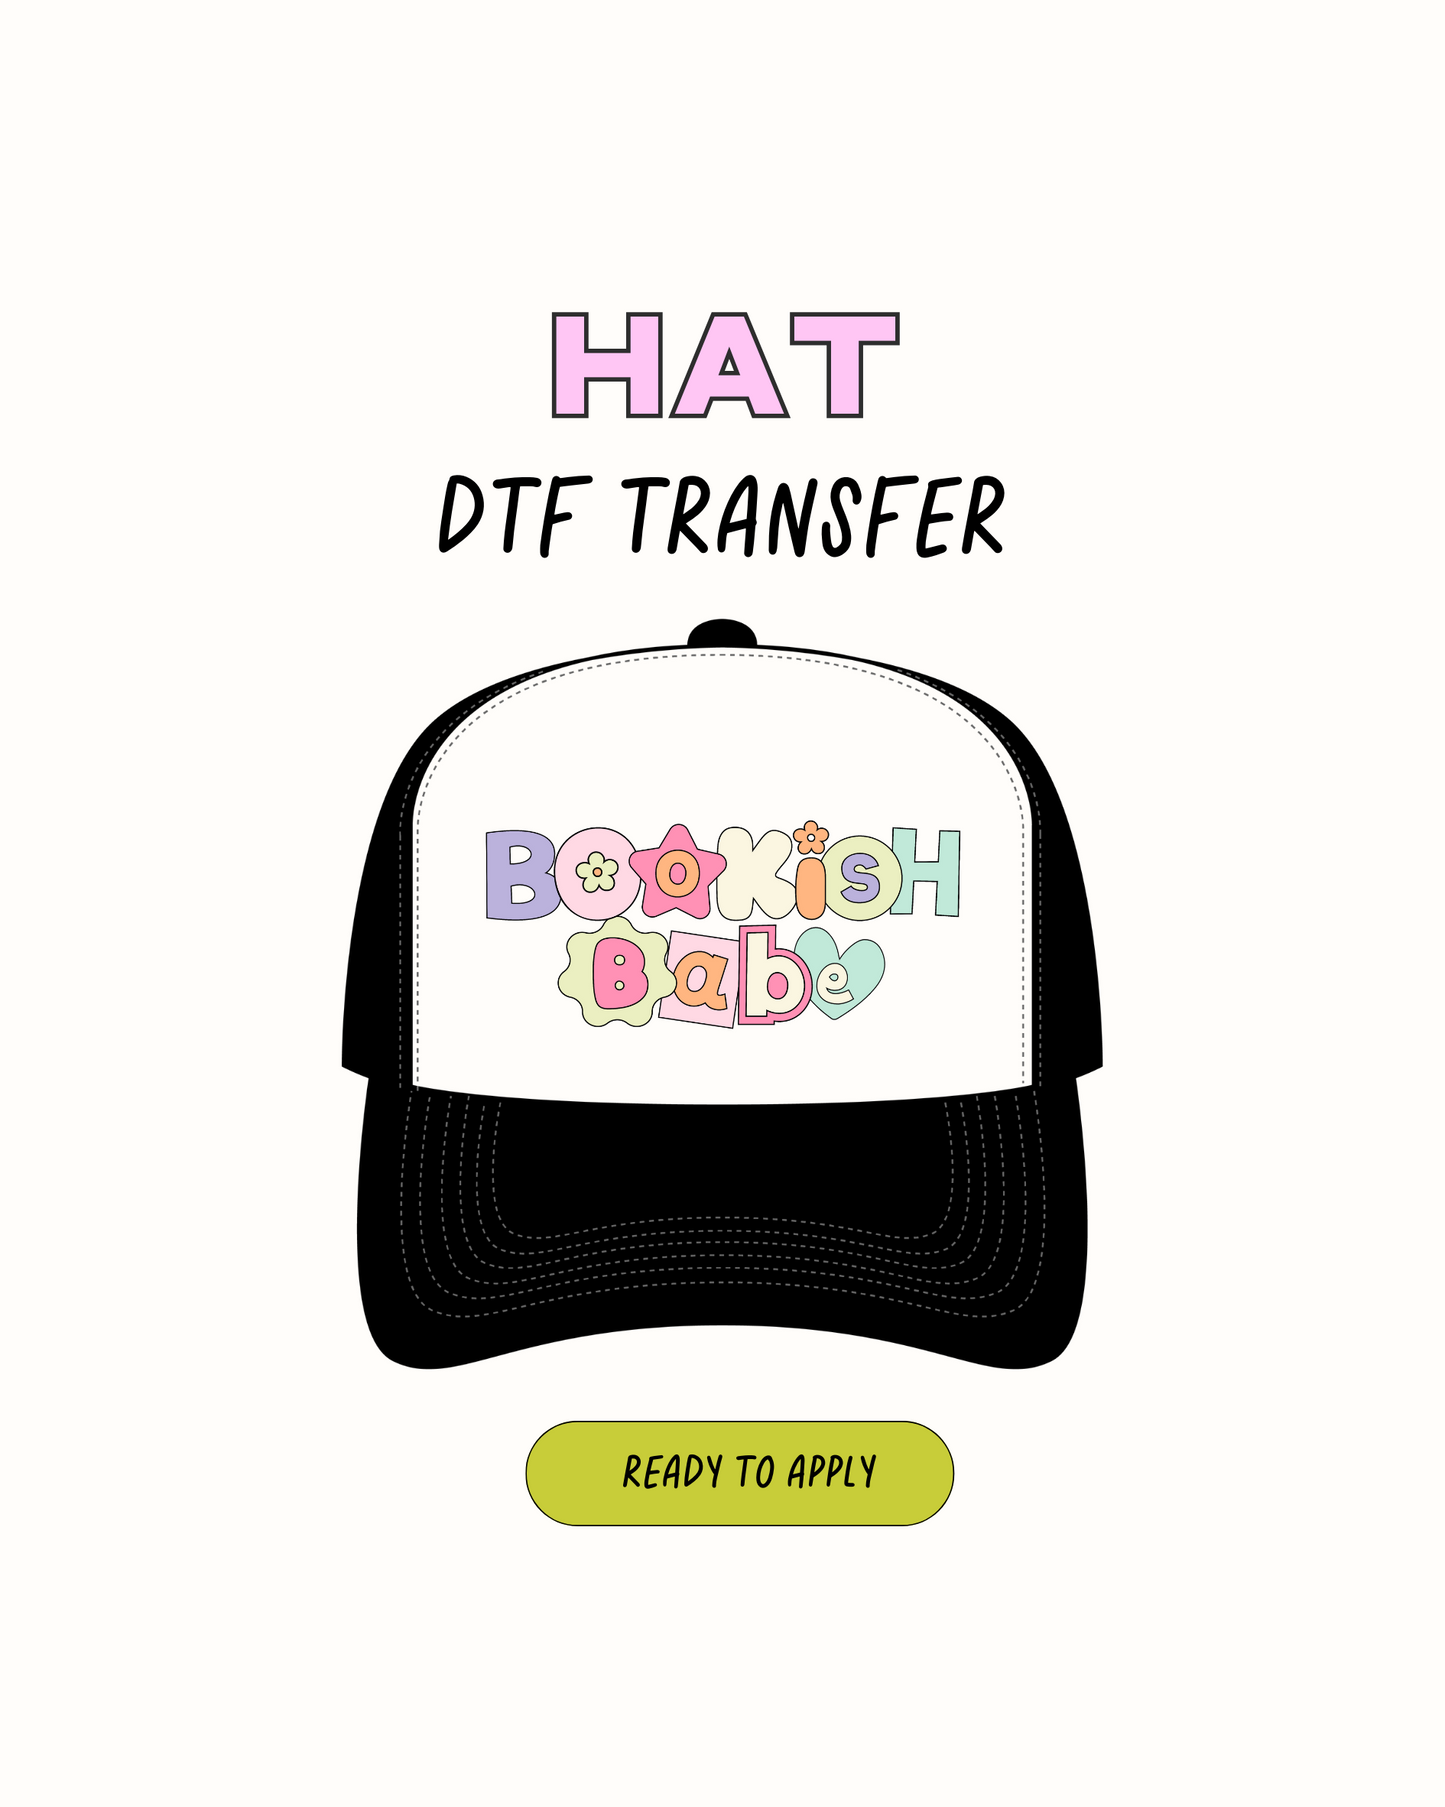 Bookish Babe - Transferencias de sombrero DTF 